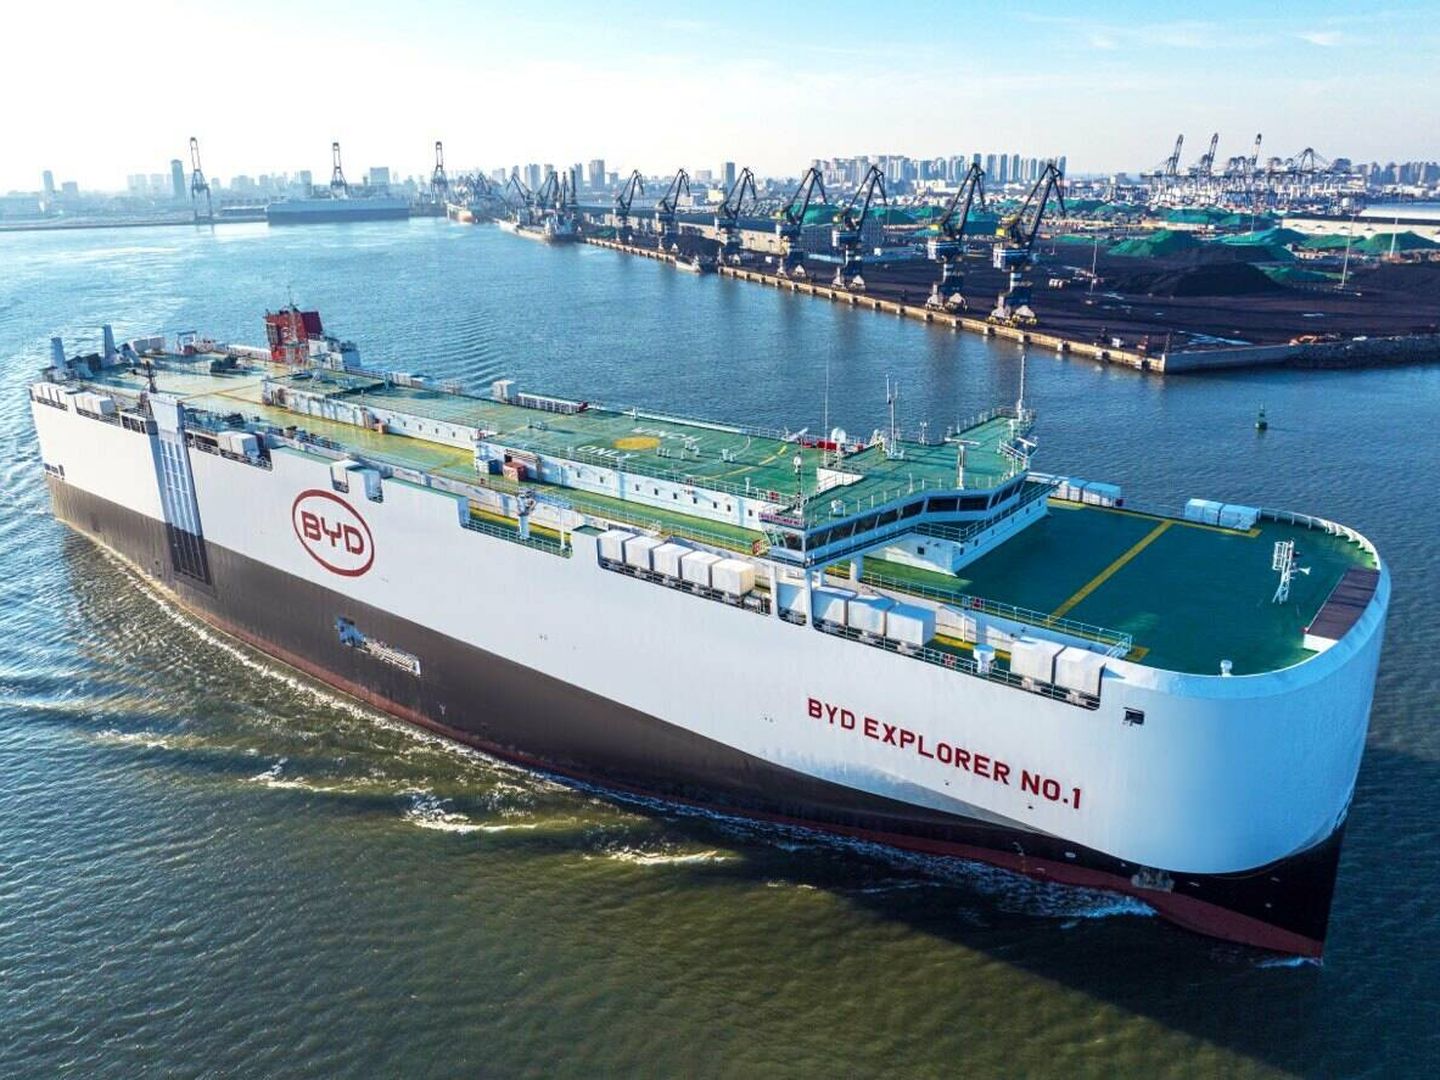 Actualmente, BYD importa a Europa todos sus coches desde China, con su propia flota de barcos.